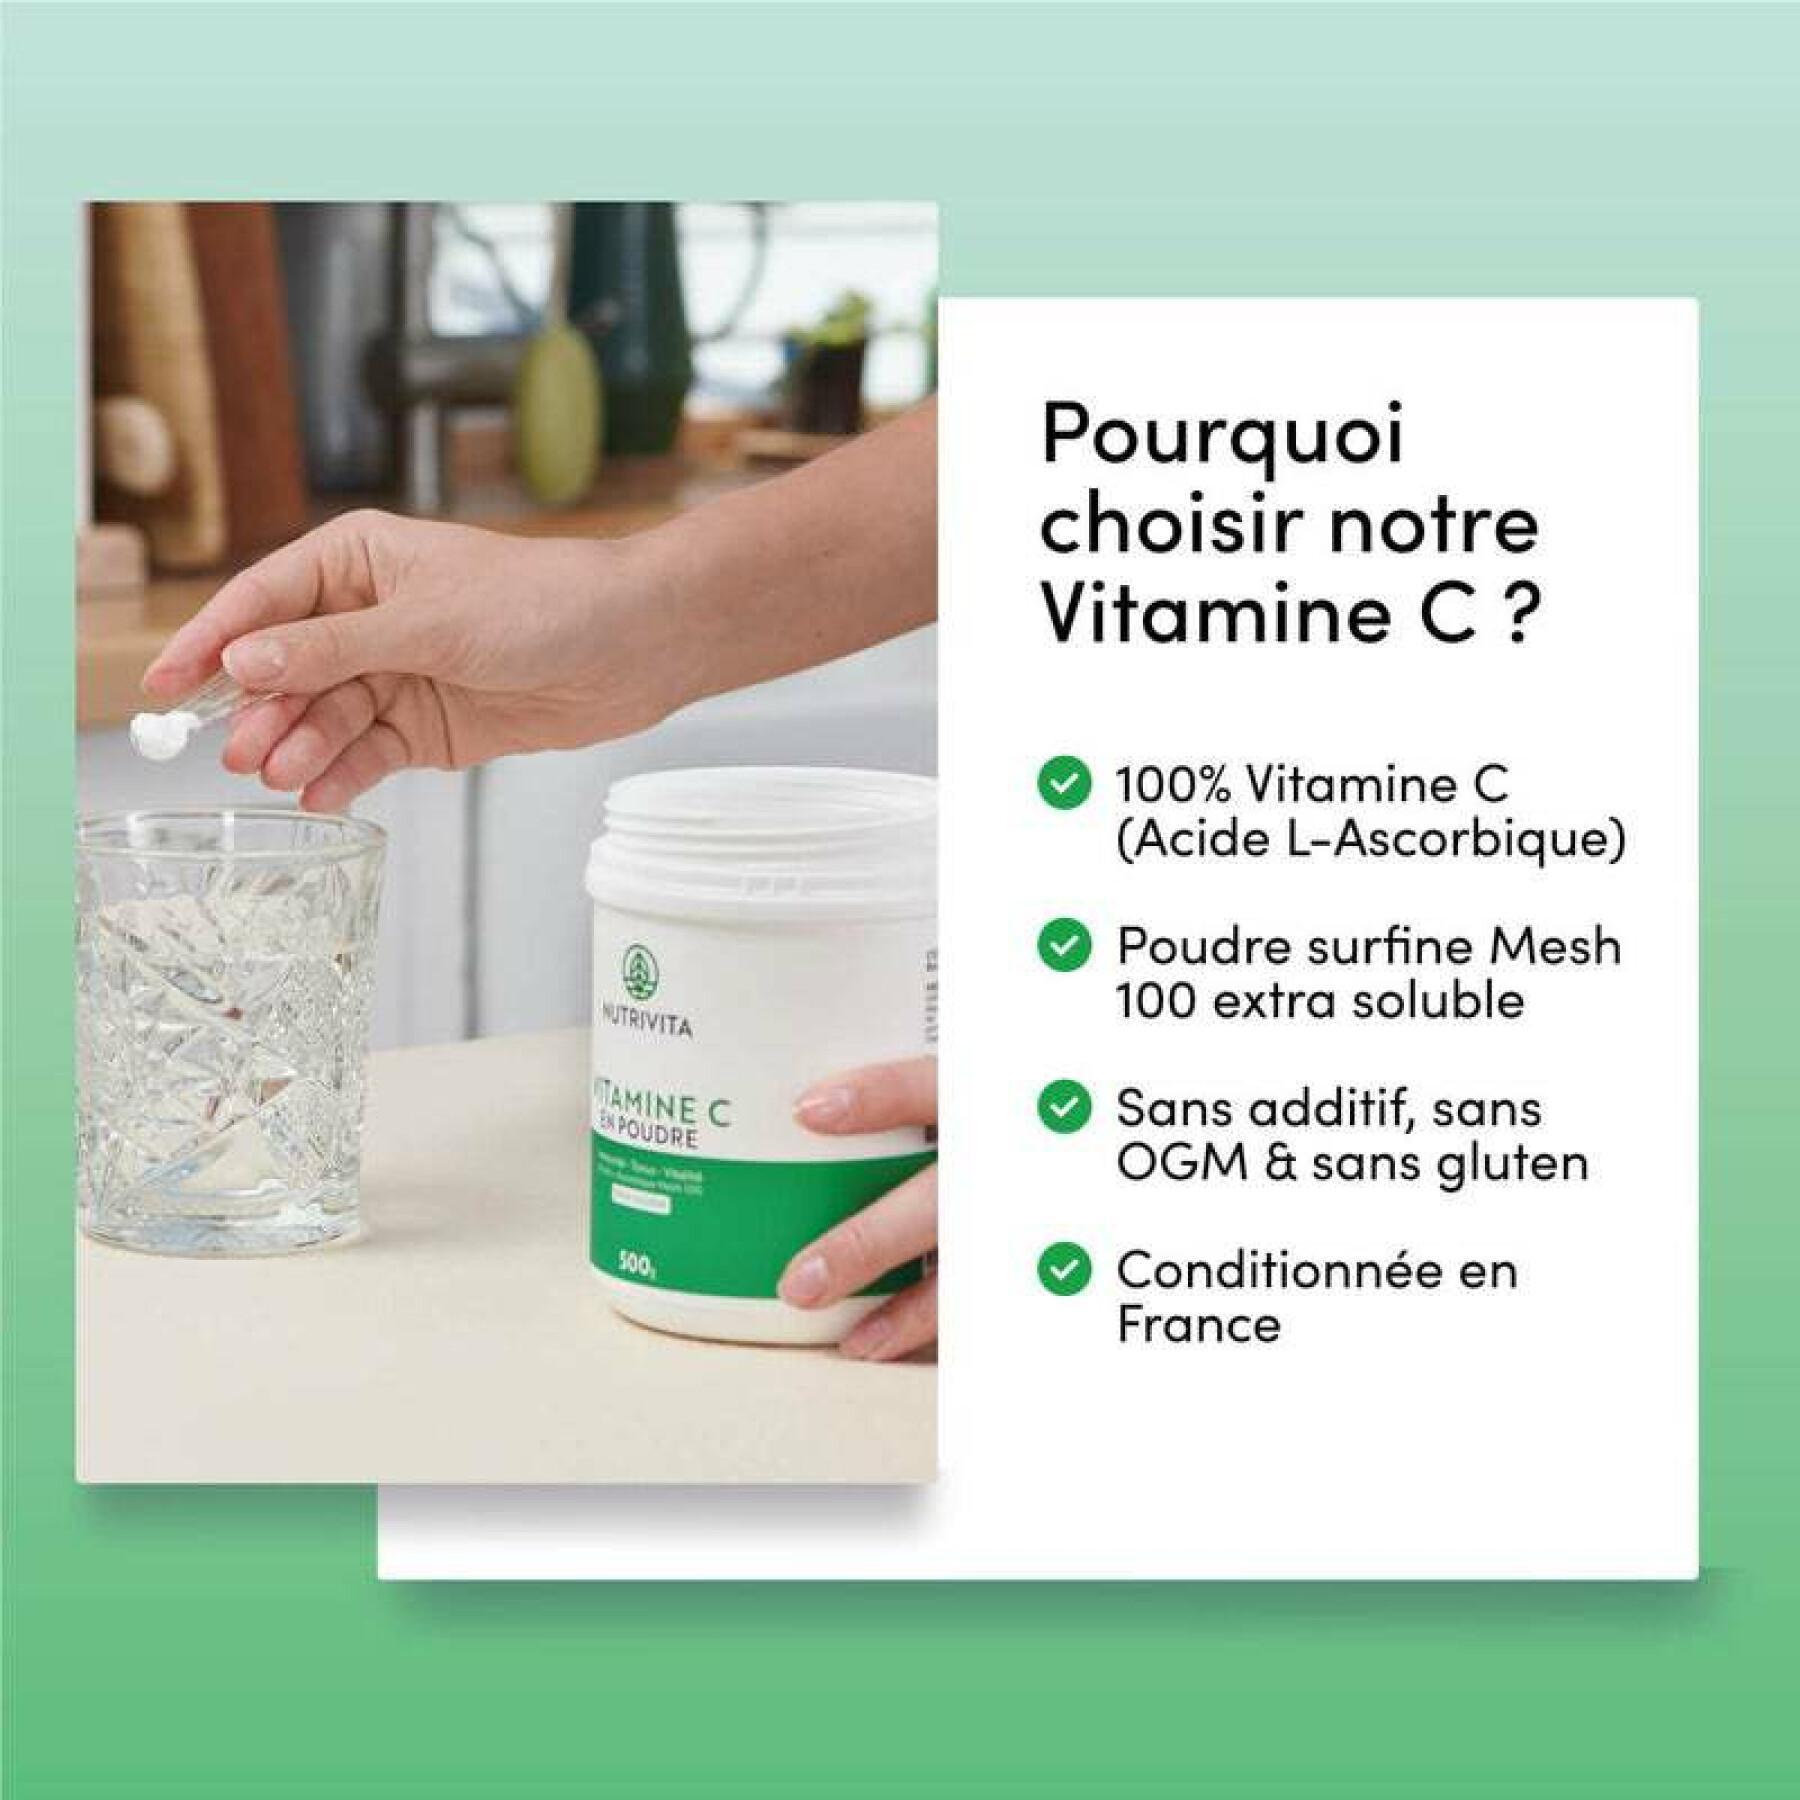 Nahrungsergänzungsmittel Vitamin c Pulver 1kg Nutrivita